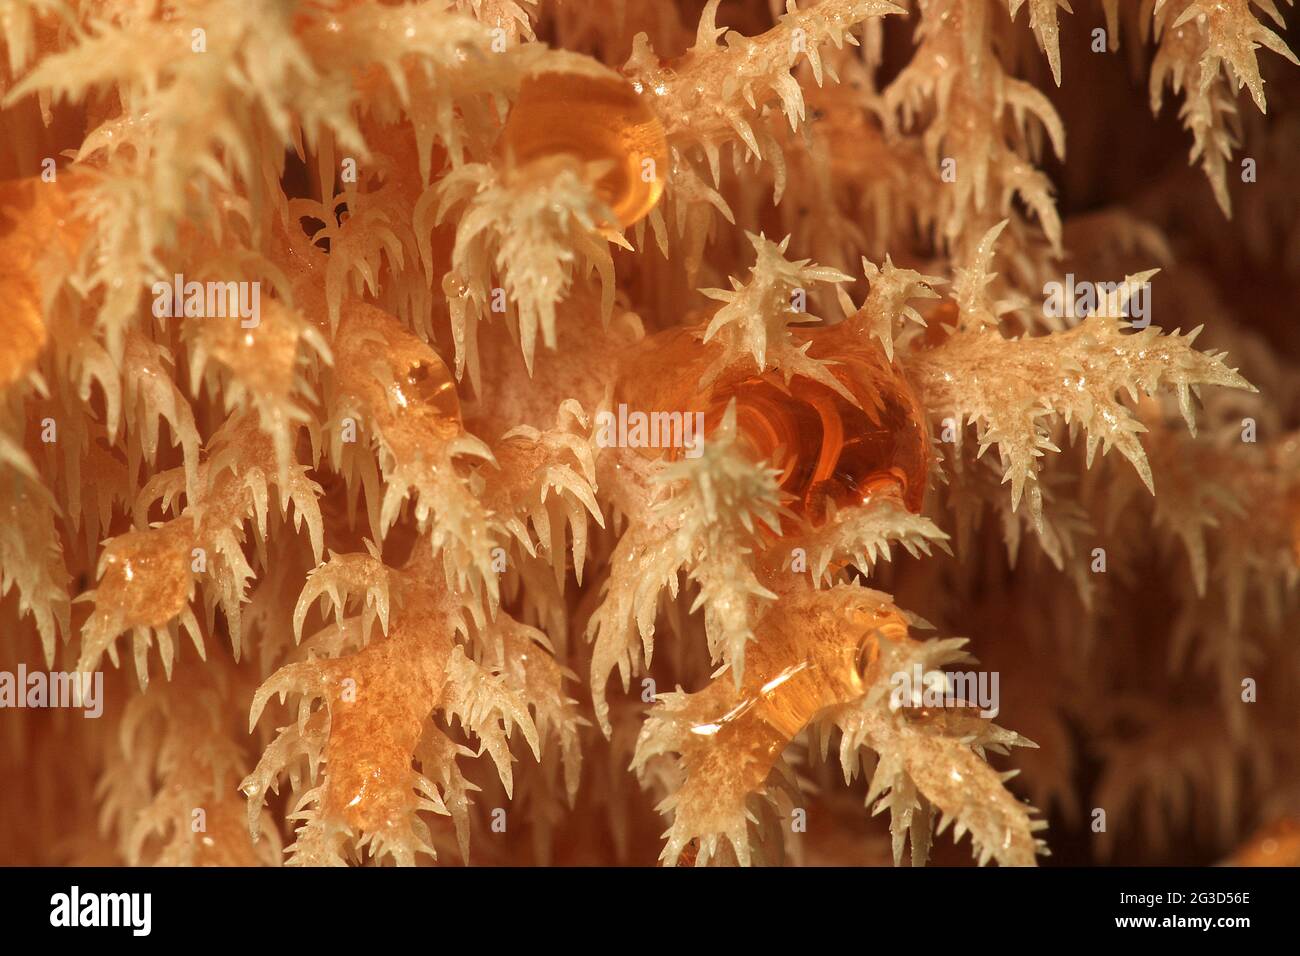 Coral tooth fungus (Hericium novae-hollandiae) Stock Photo